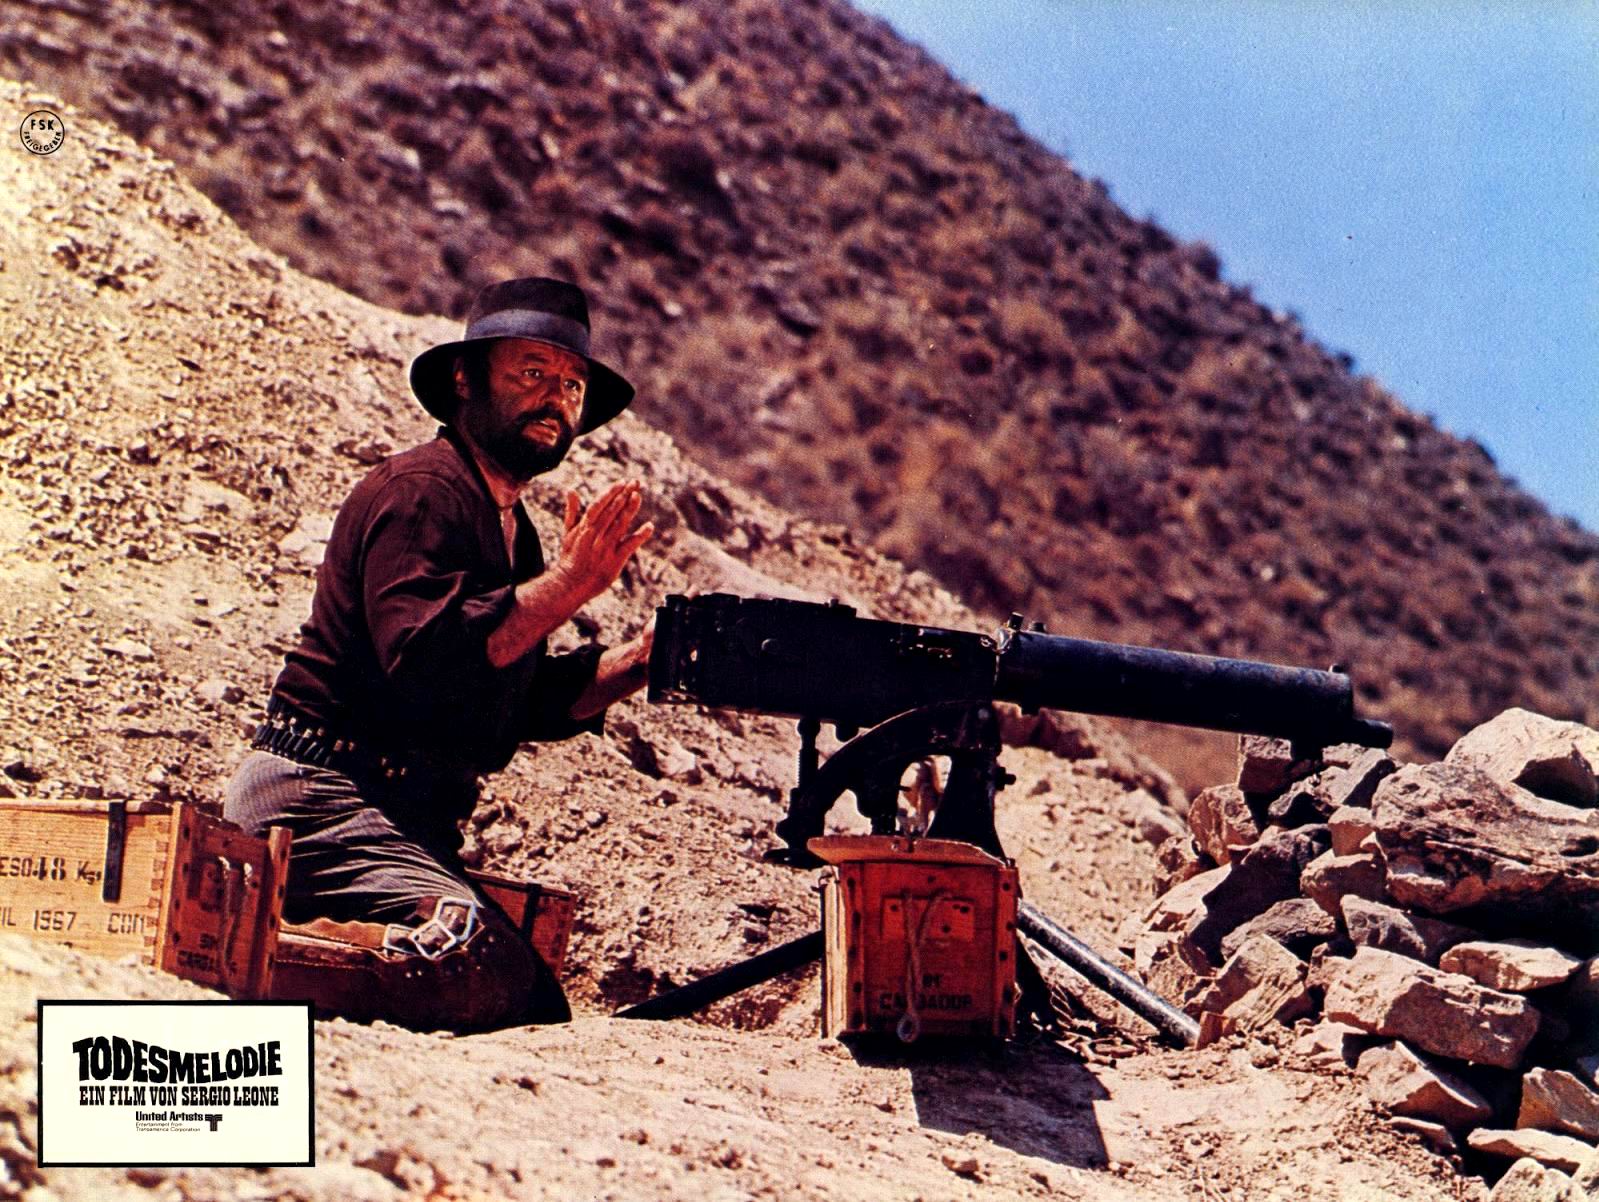 Il était une fois... La révolution (1970) Sergio Leone - Giù la testa (04.1970 / 07.1970)